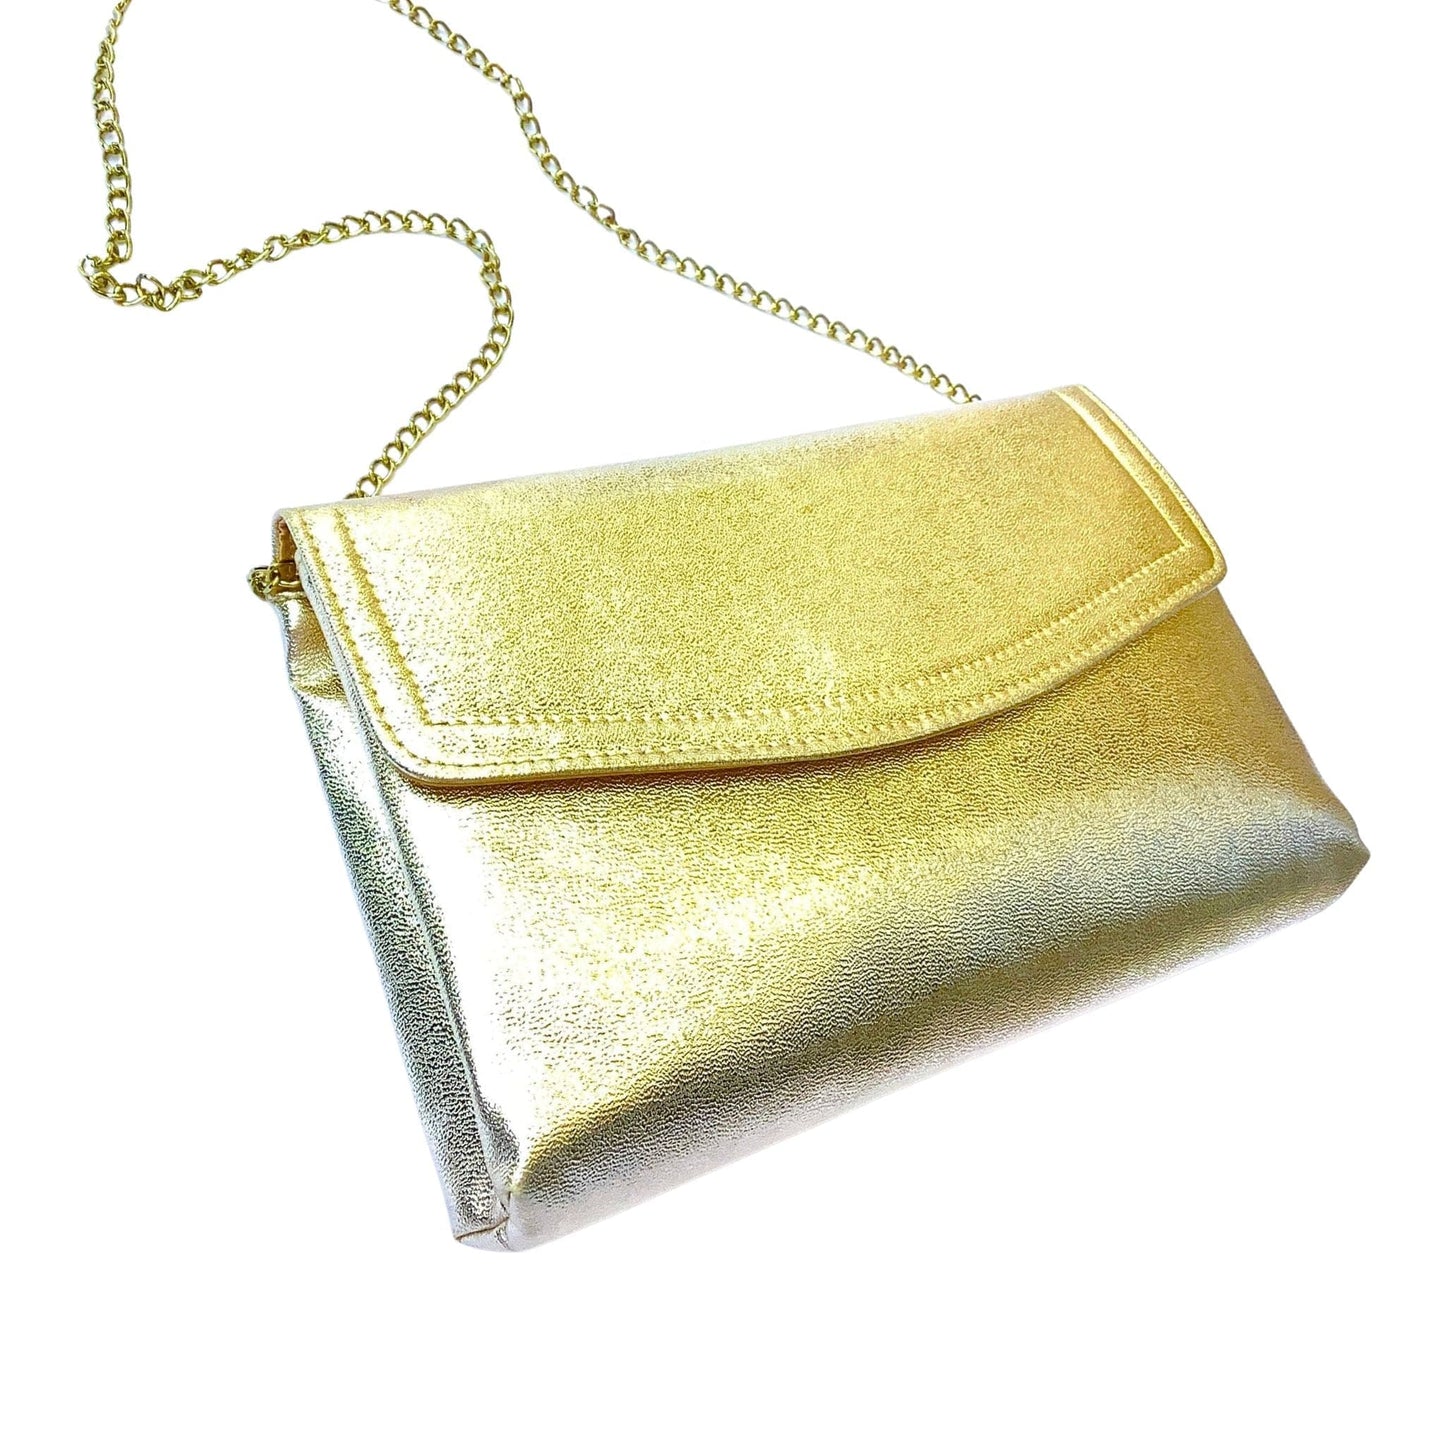 Vintage Gold Handbag Gold / Man Made / Vintage 1980s